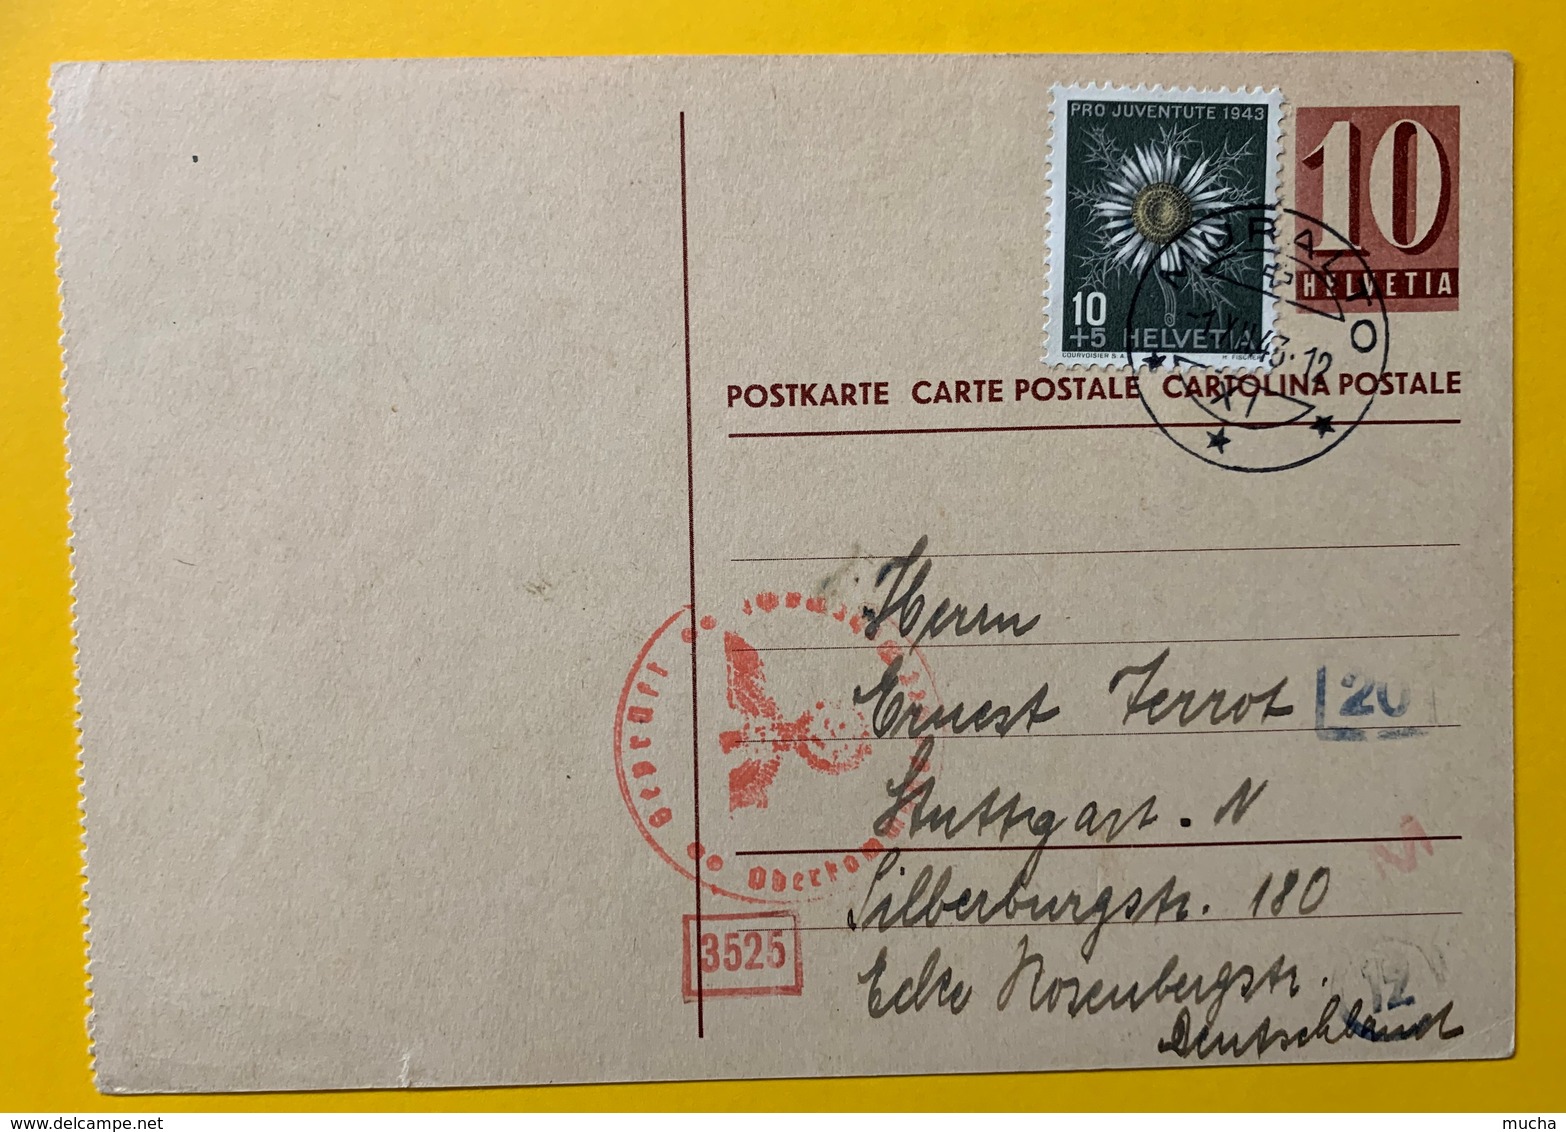 9630 -  Entier Postal  No 156 Y  Longeur Titre 76 Mm Muralto 1.12.1943 Pour L'Allemagne Censures - Interi Postali